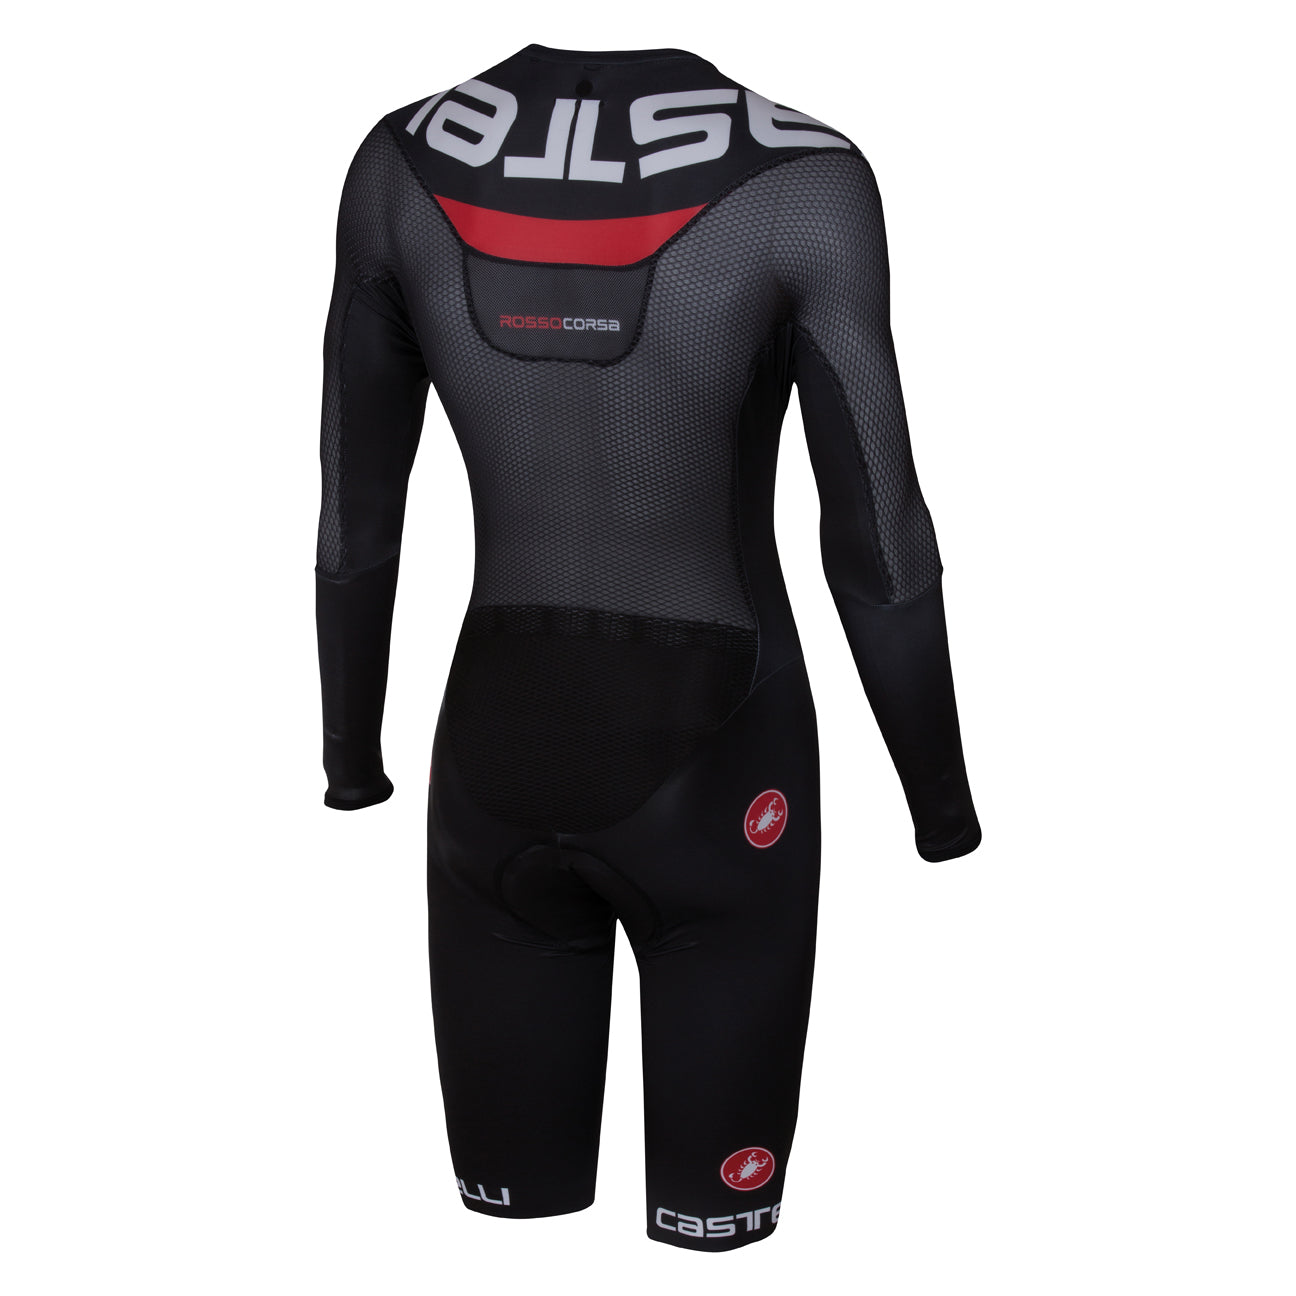 Castelli Mens Bodypaint 3.0 Speedsuit - Black Red